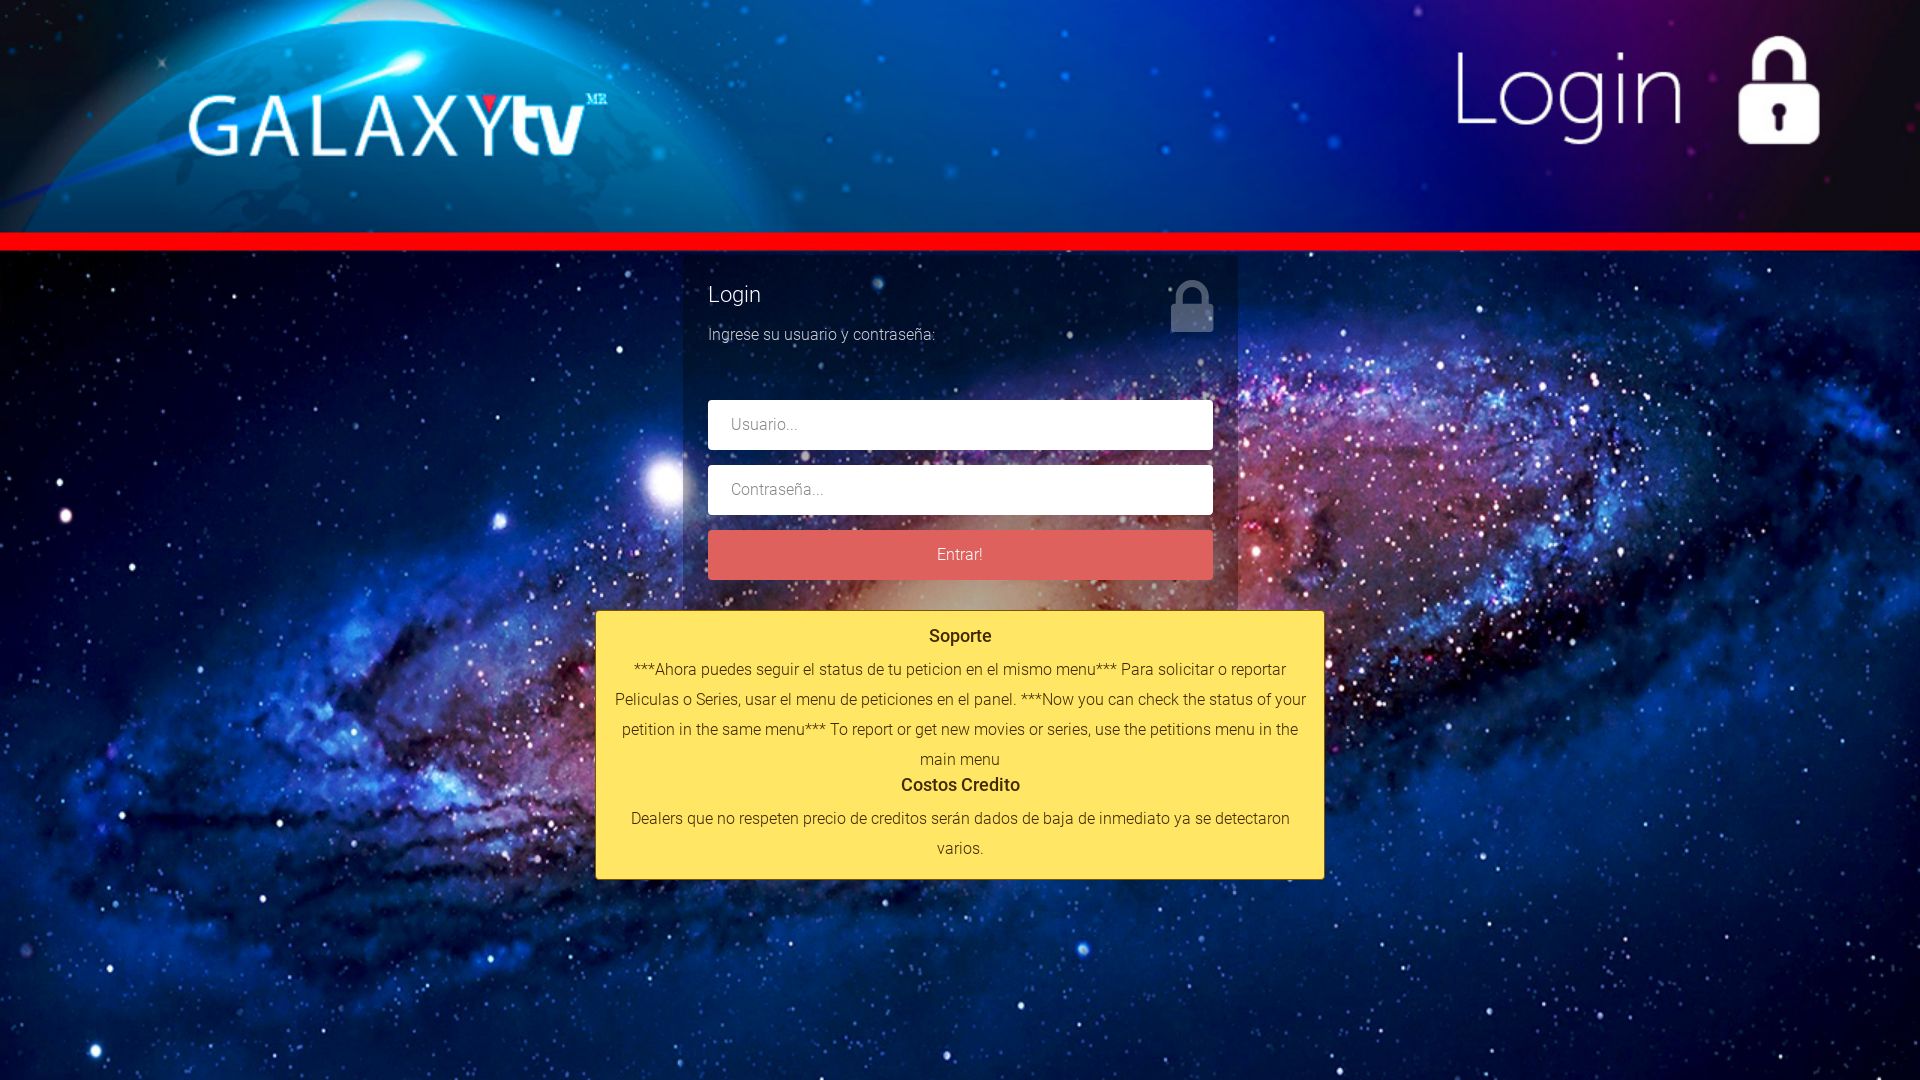 Stato del sito web galaxytv.mx è   ONLINE